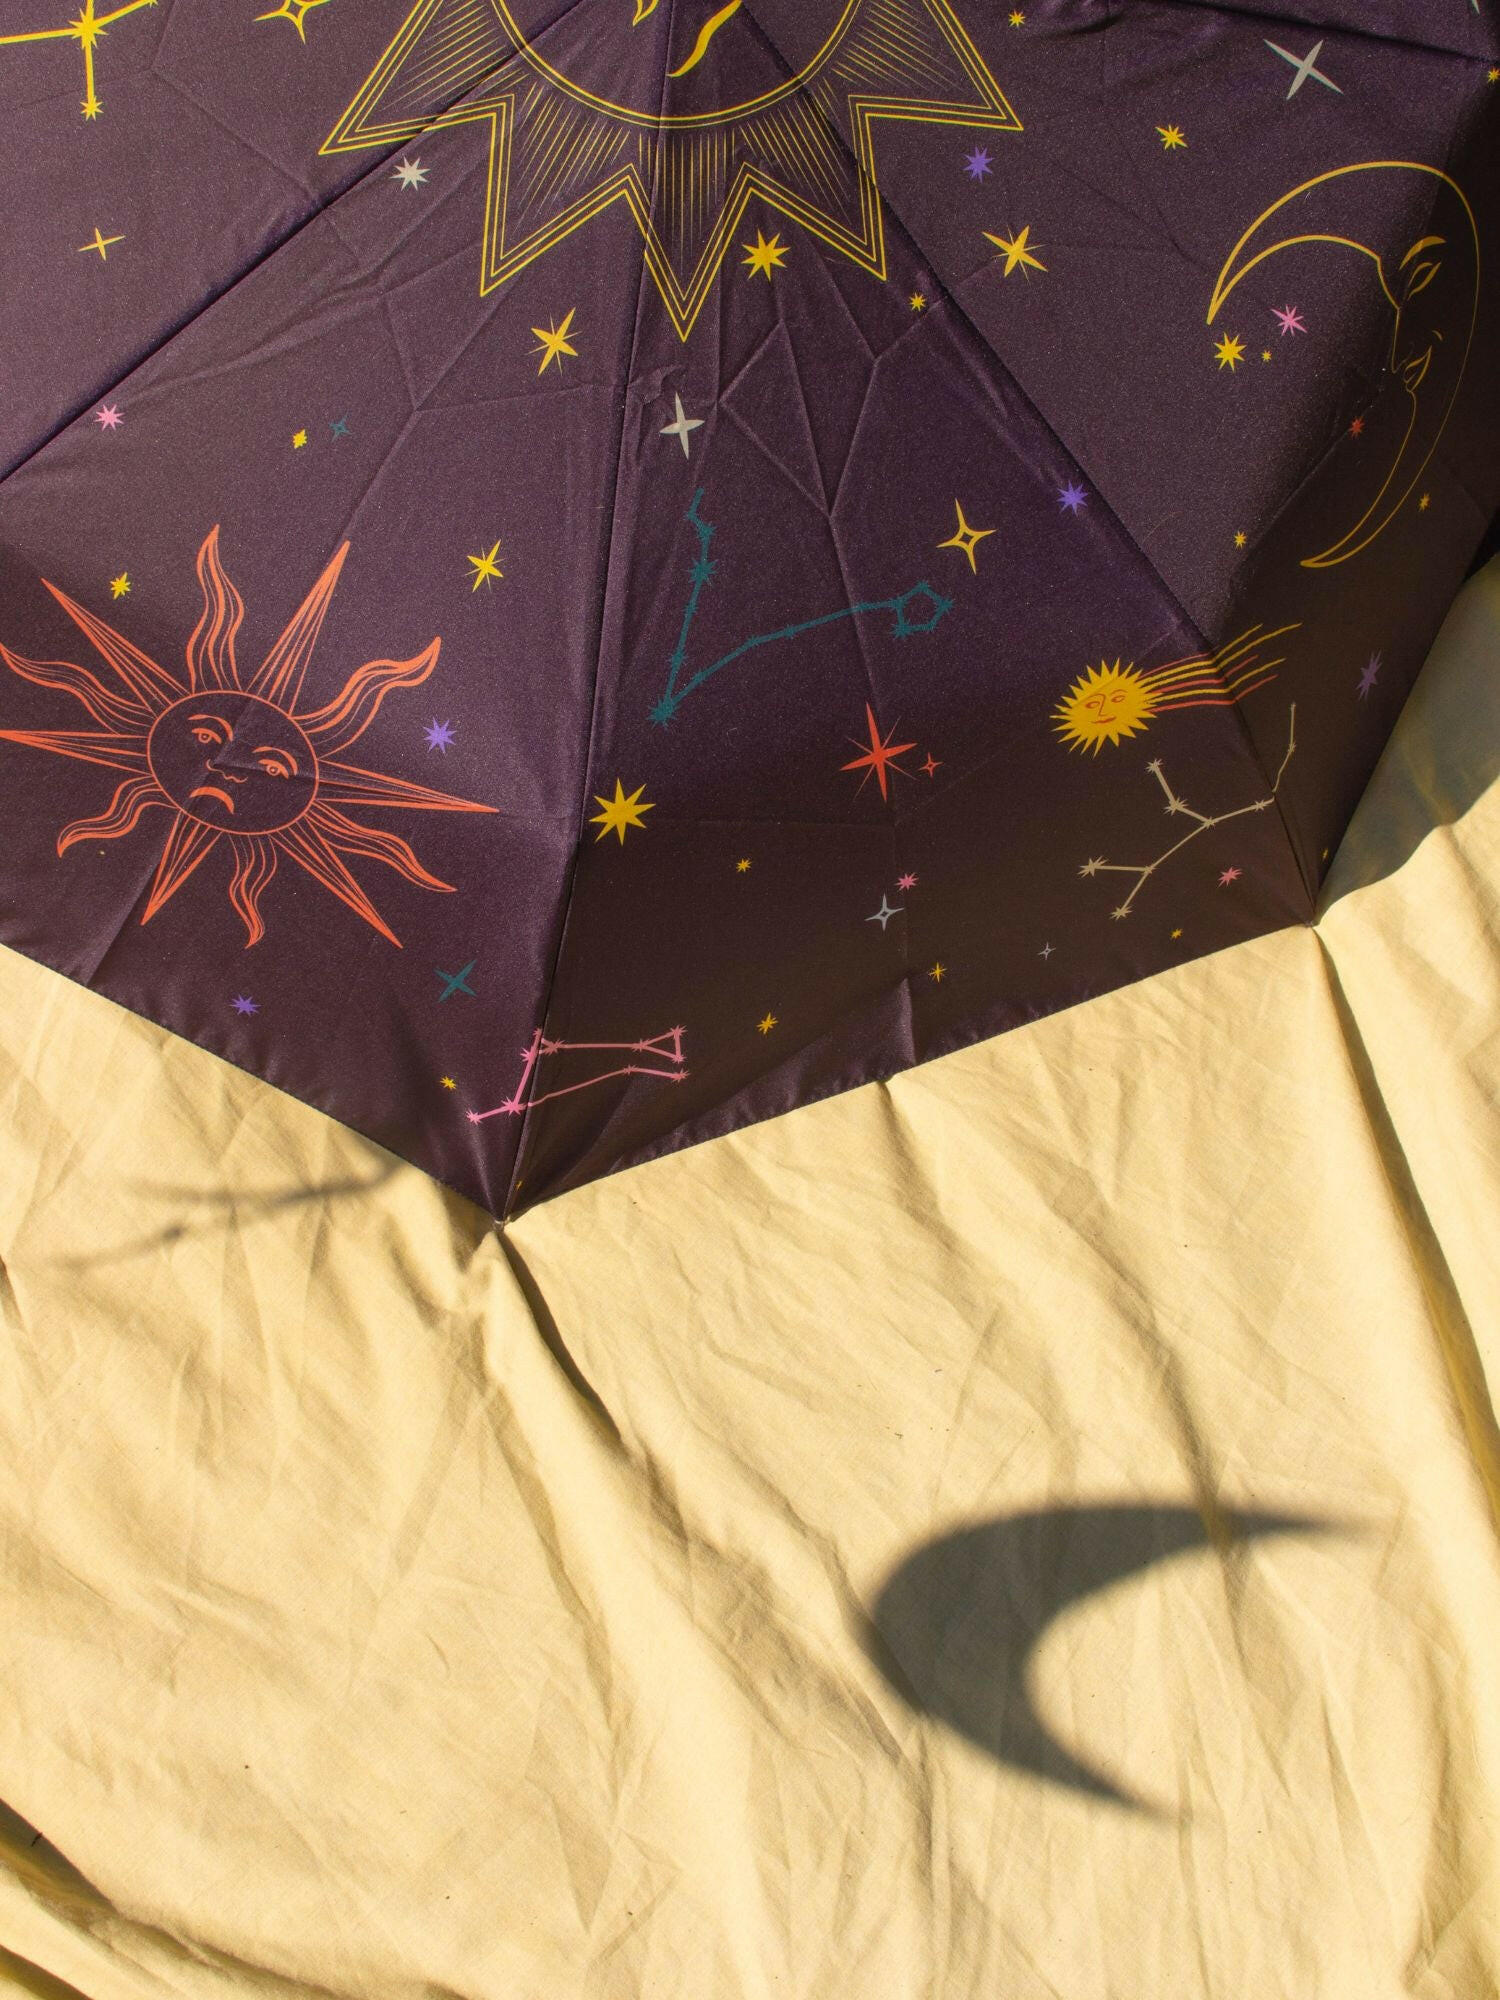 Zodiac Eco-friendly Compact Umbrella.